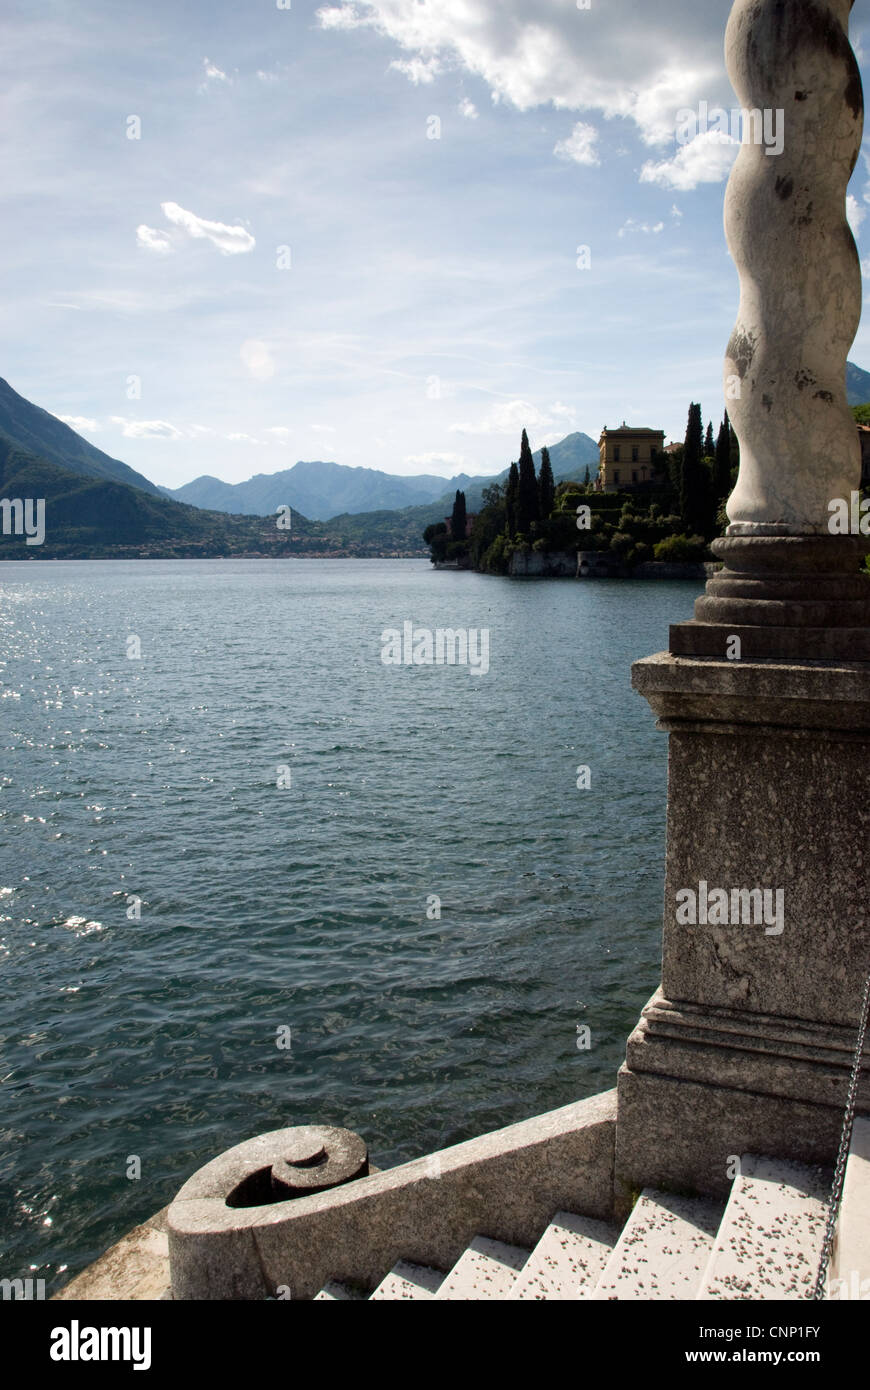 Étapes jusqu'au lac de Côme, l'établissement Villa Monastero, Italie. Banque D'Images